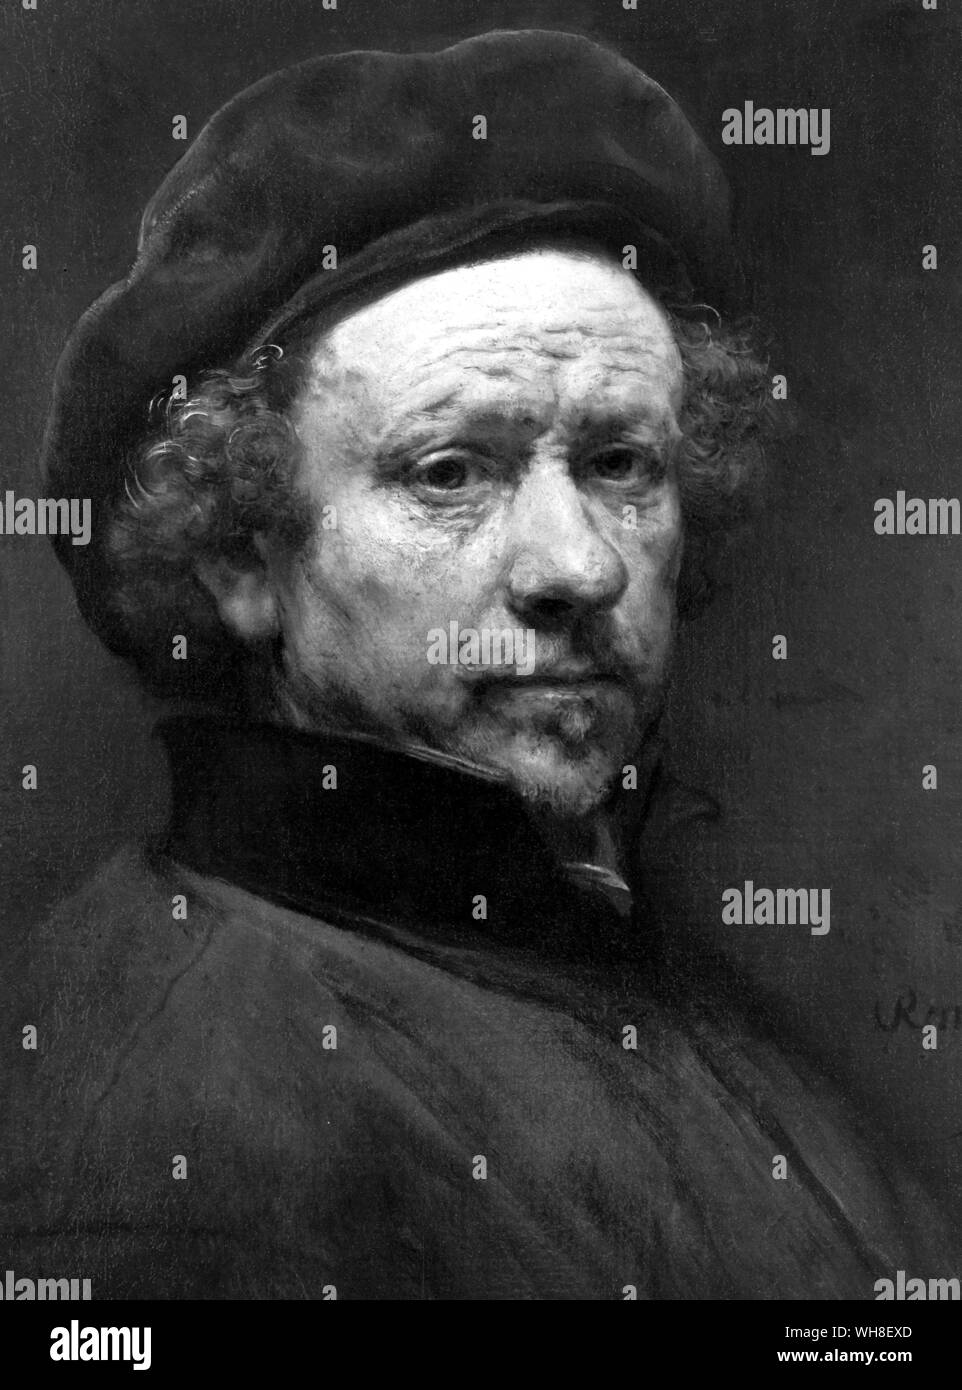 Harmensz van Rijn Rembrandt (1606-1699), niederländischer Maler und Radierer. Stockfoto